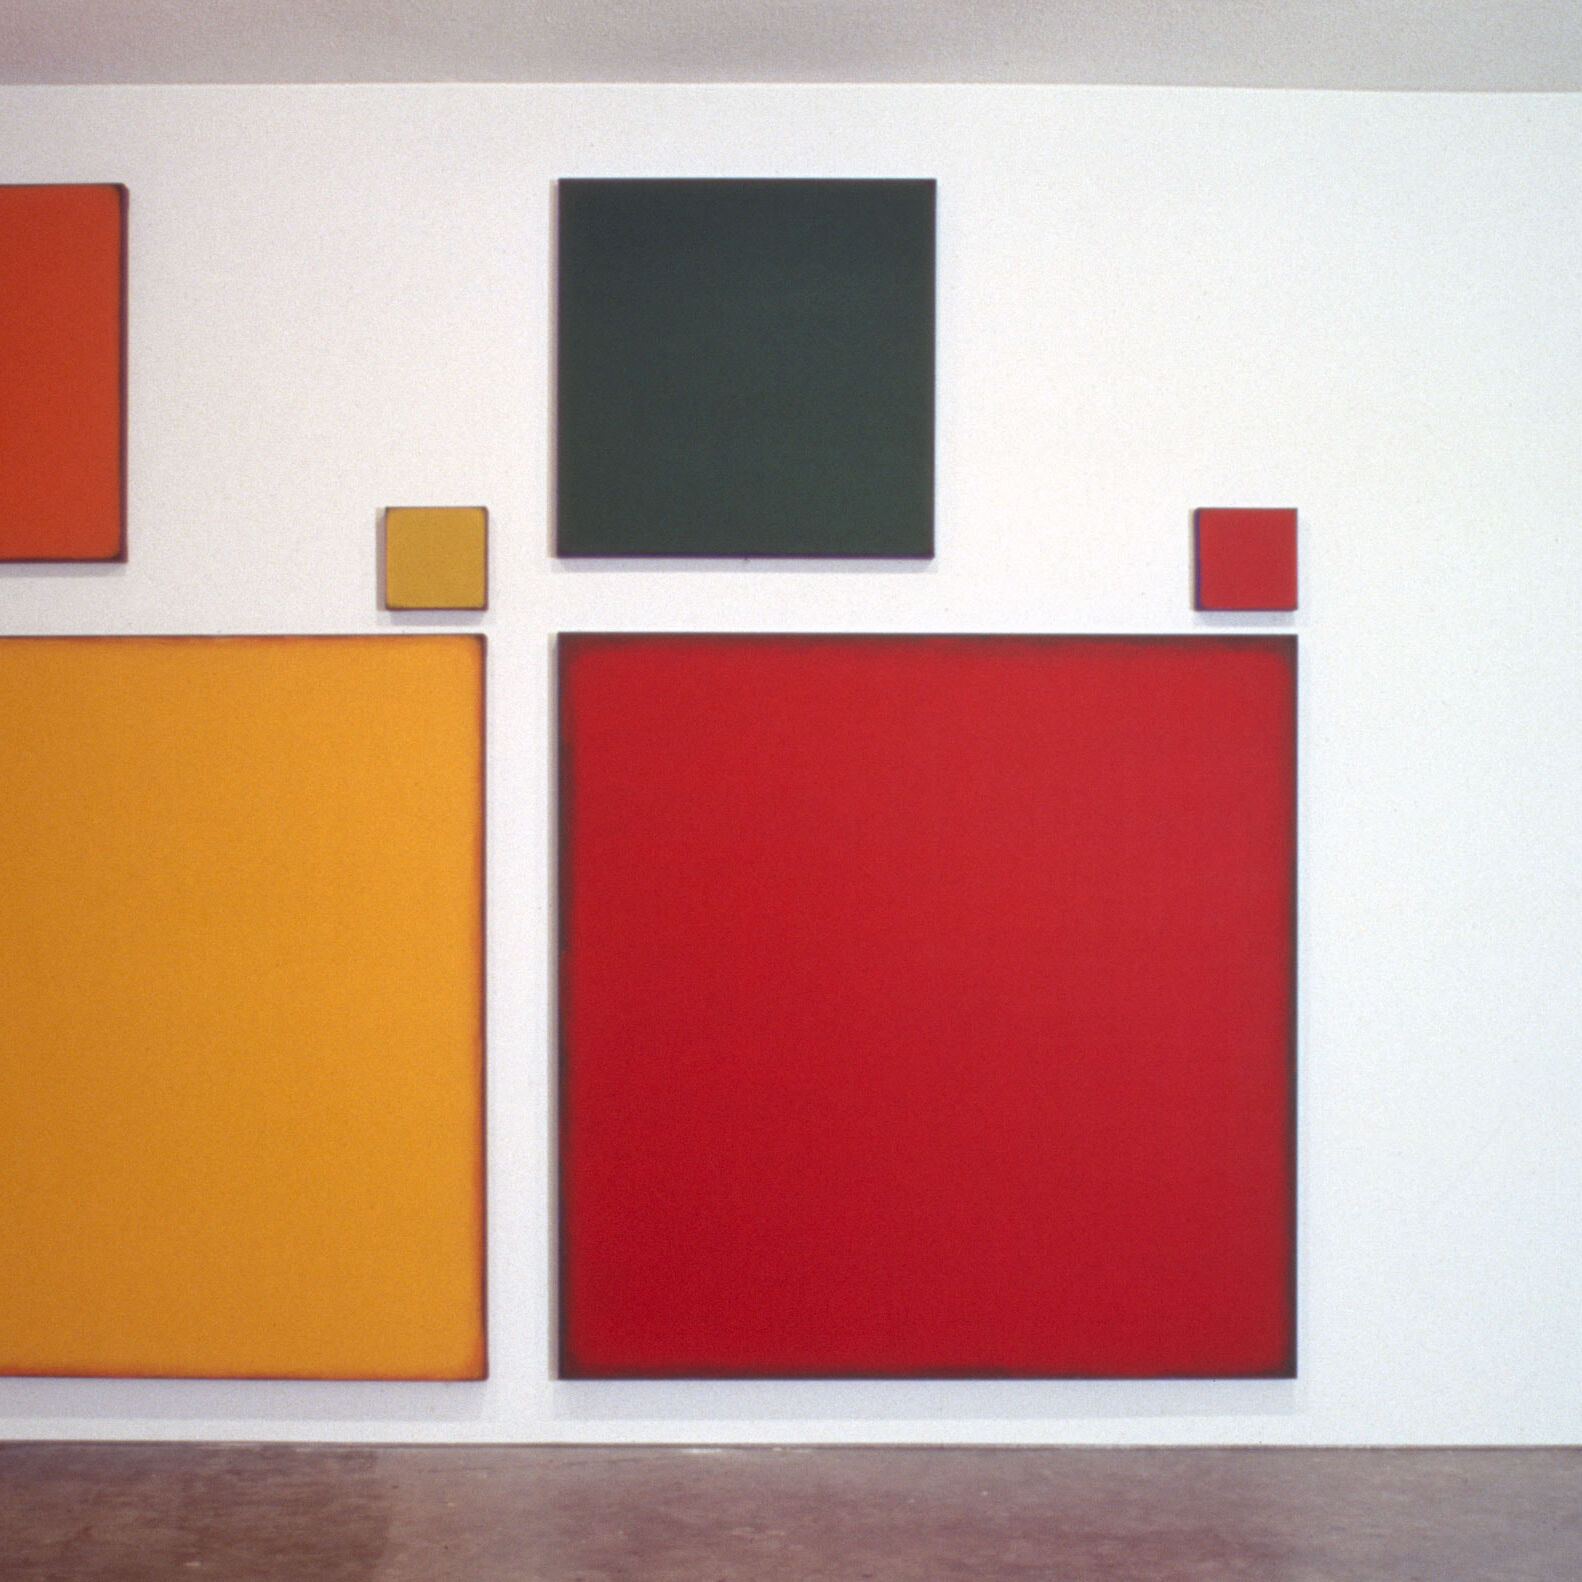 installation view, 2004